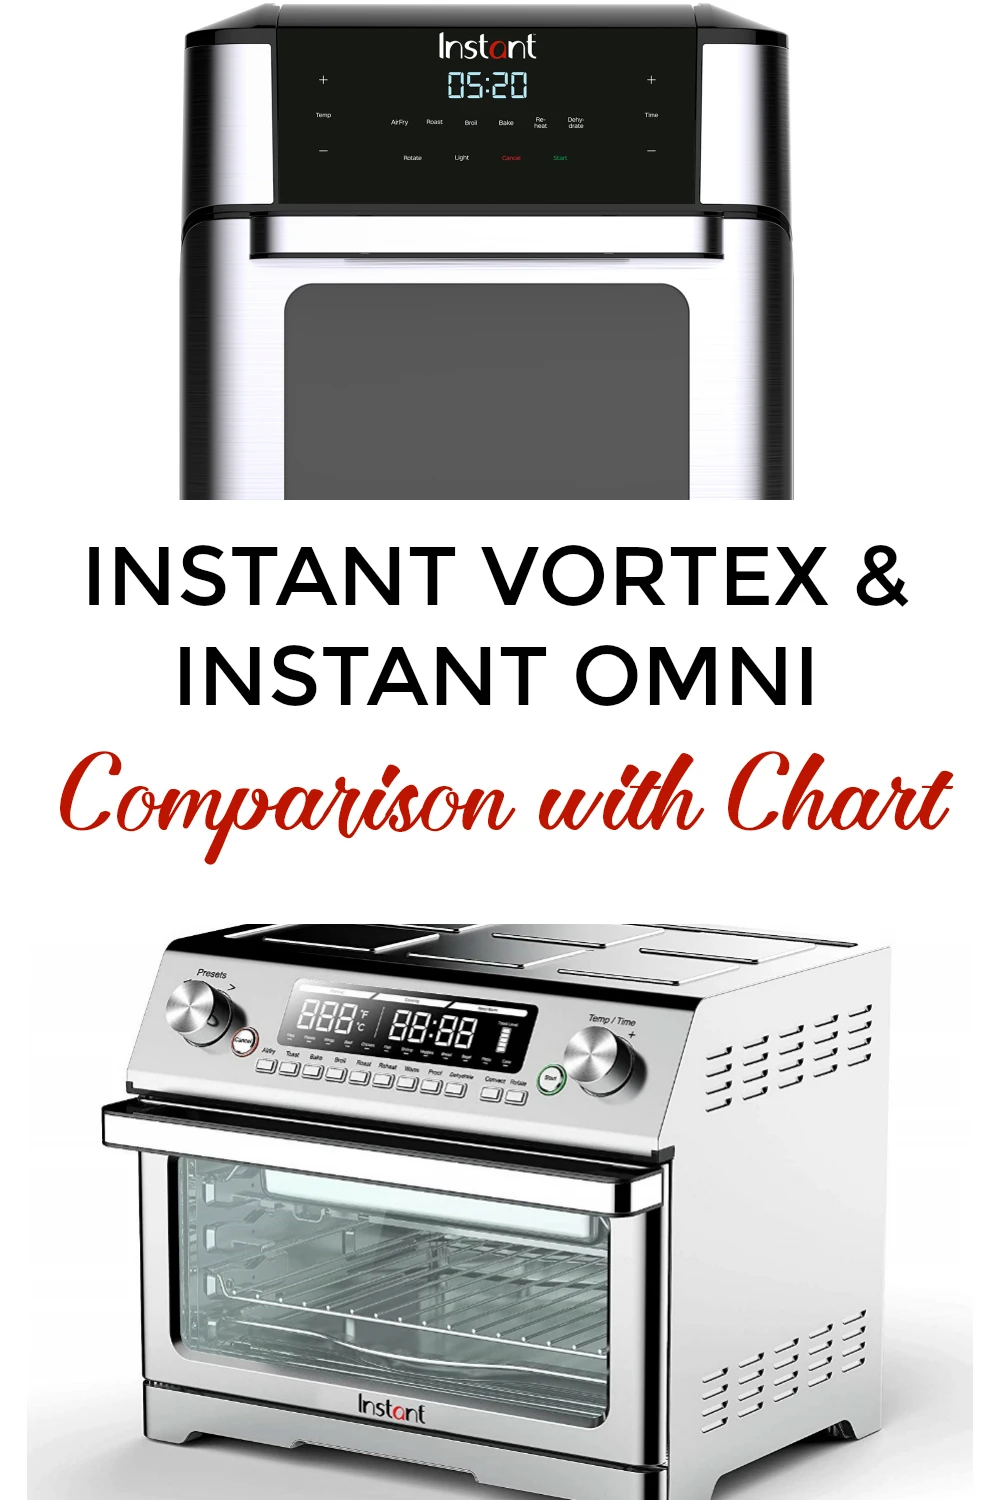 Instant 6-Qt. Vortex Slim Air Fryer + Reviews, Crate & Barrel in 2023